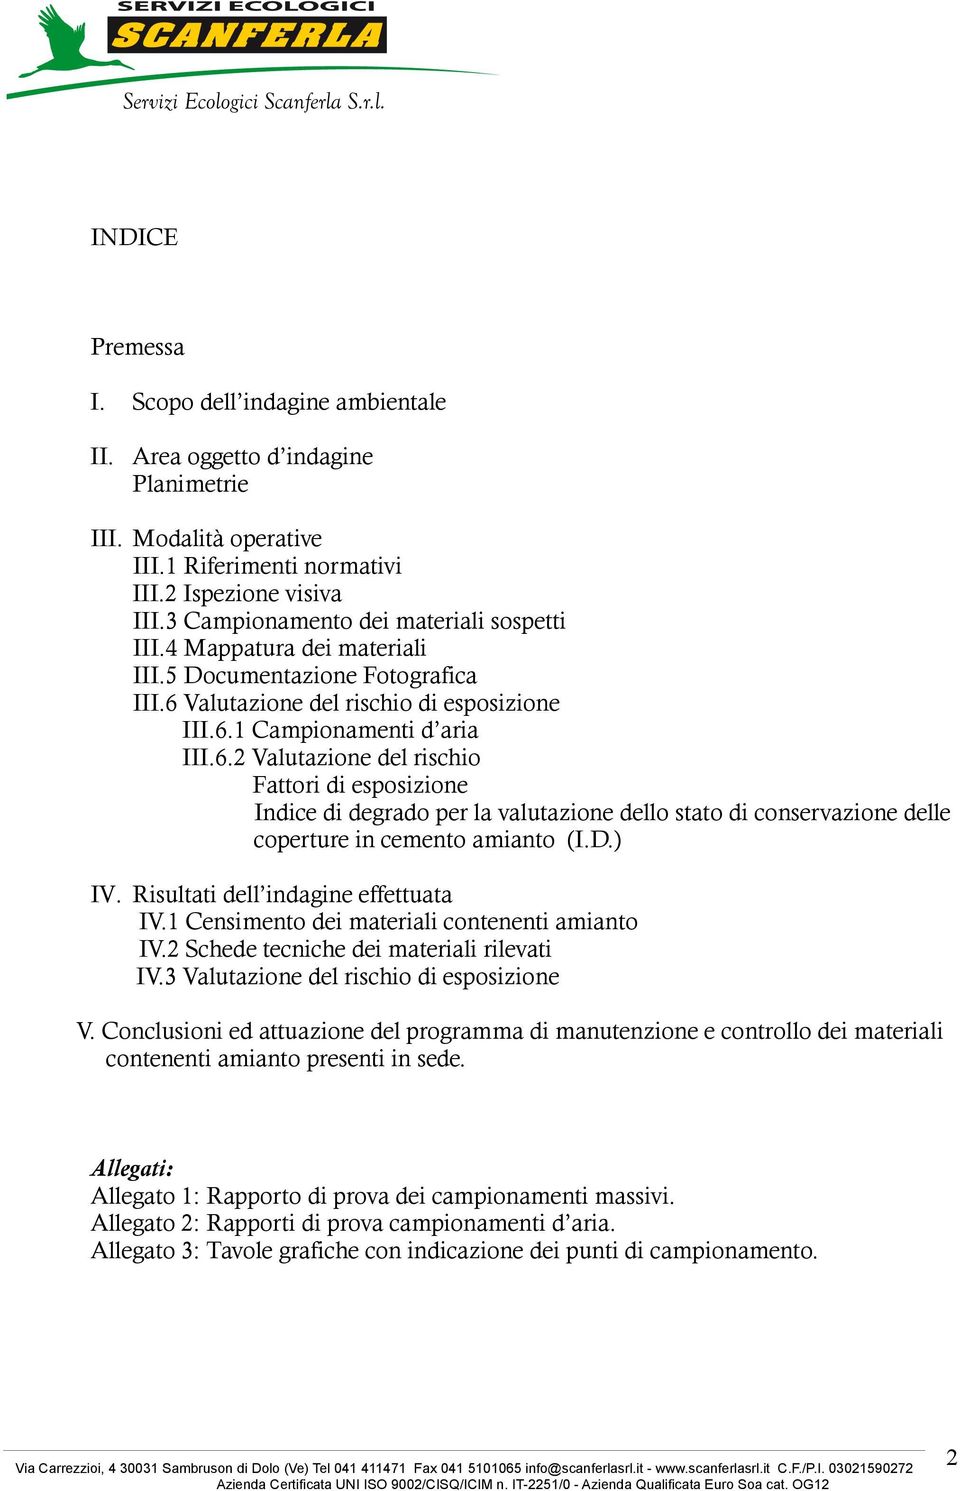 Valutazione del rischio di esposizione III.6. Campionamenti d aria III.6.2 Valutazione del rischio Fattori di esposizione Indice di degrado per la valutazione dello stato di conservazione delle coperture in cemento amianto (I.